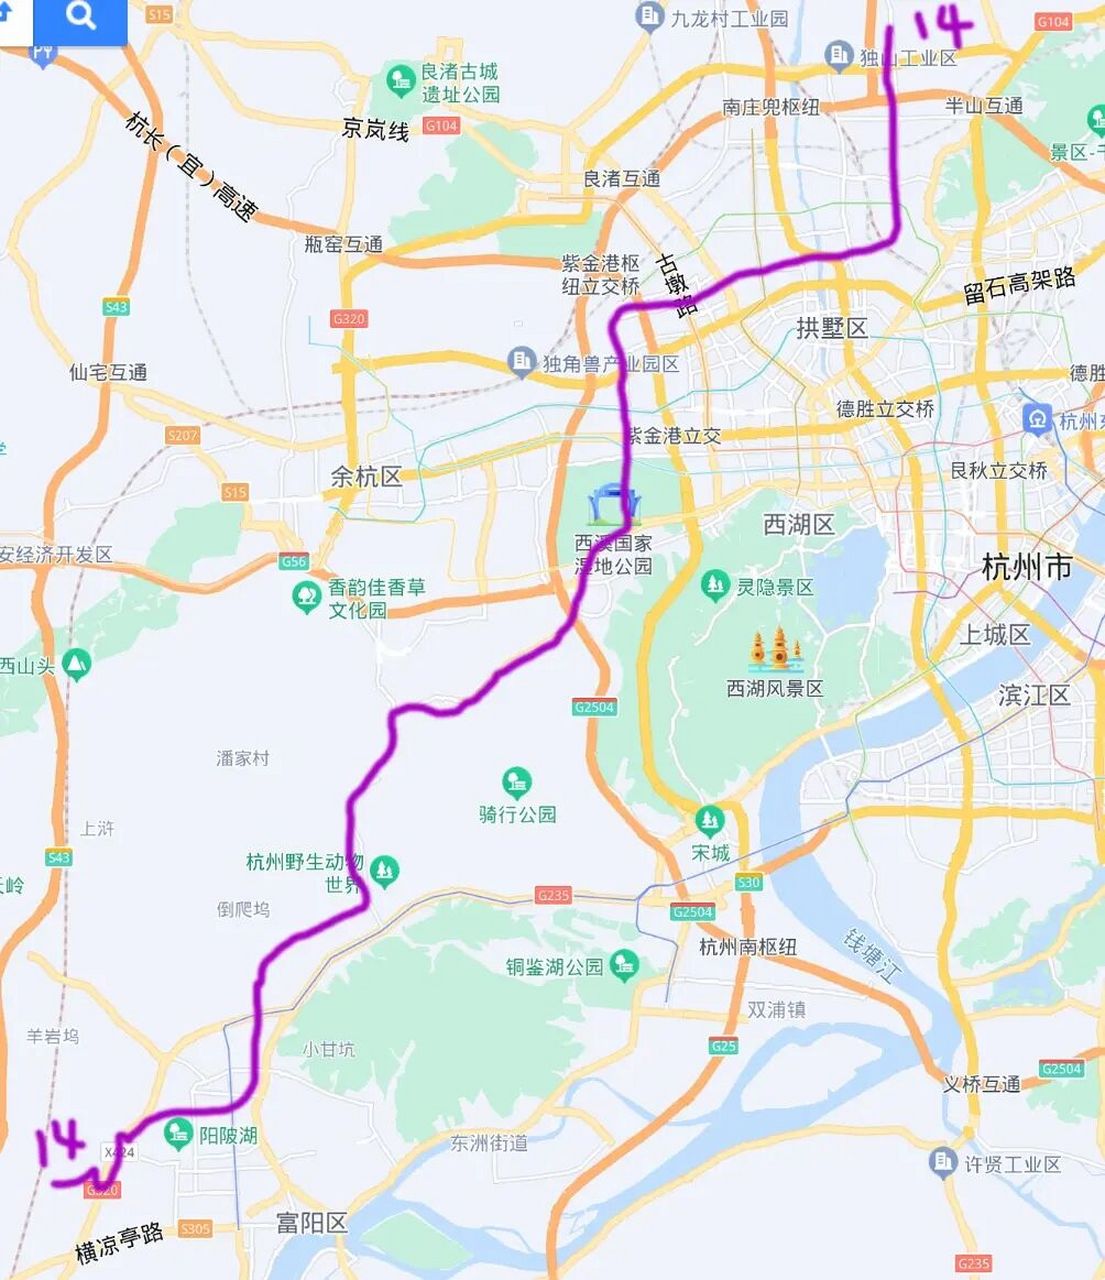 杭州地铁14号线大致规划走向 从崇贤北部地区到富阳西站 横贯城北北部